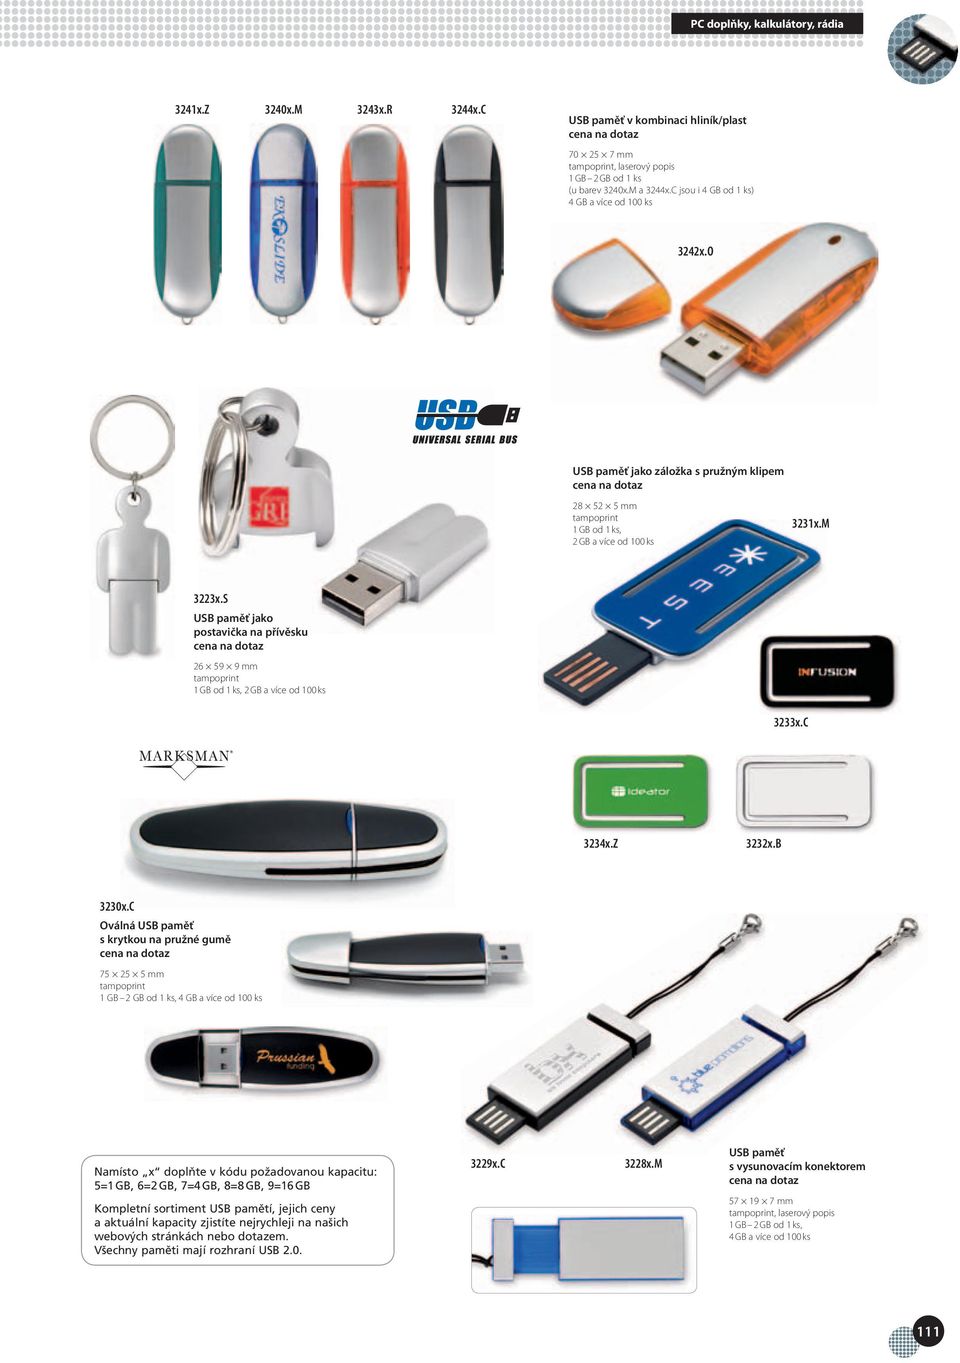 S USB paměť jako postavička na přívěsku 26 59 9 mm 1 GB od 1 ks, 2 GB a více od 100 ks 3233x.C 3234x.Z 3232x.B 3230x.